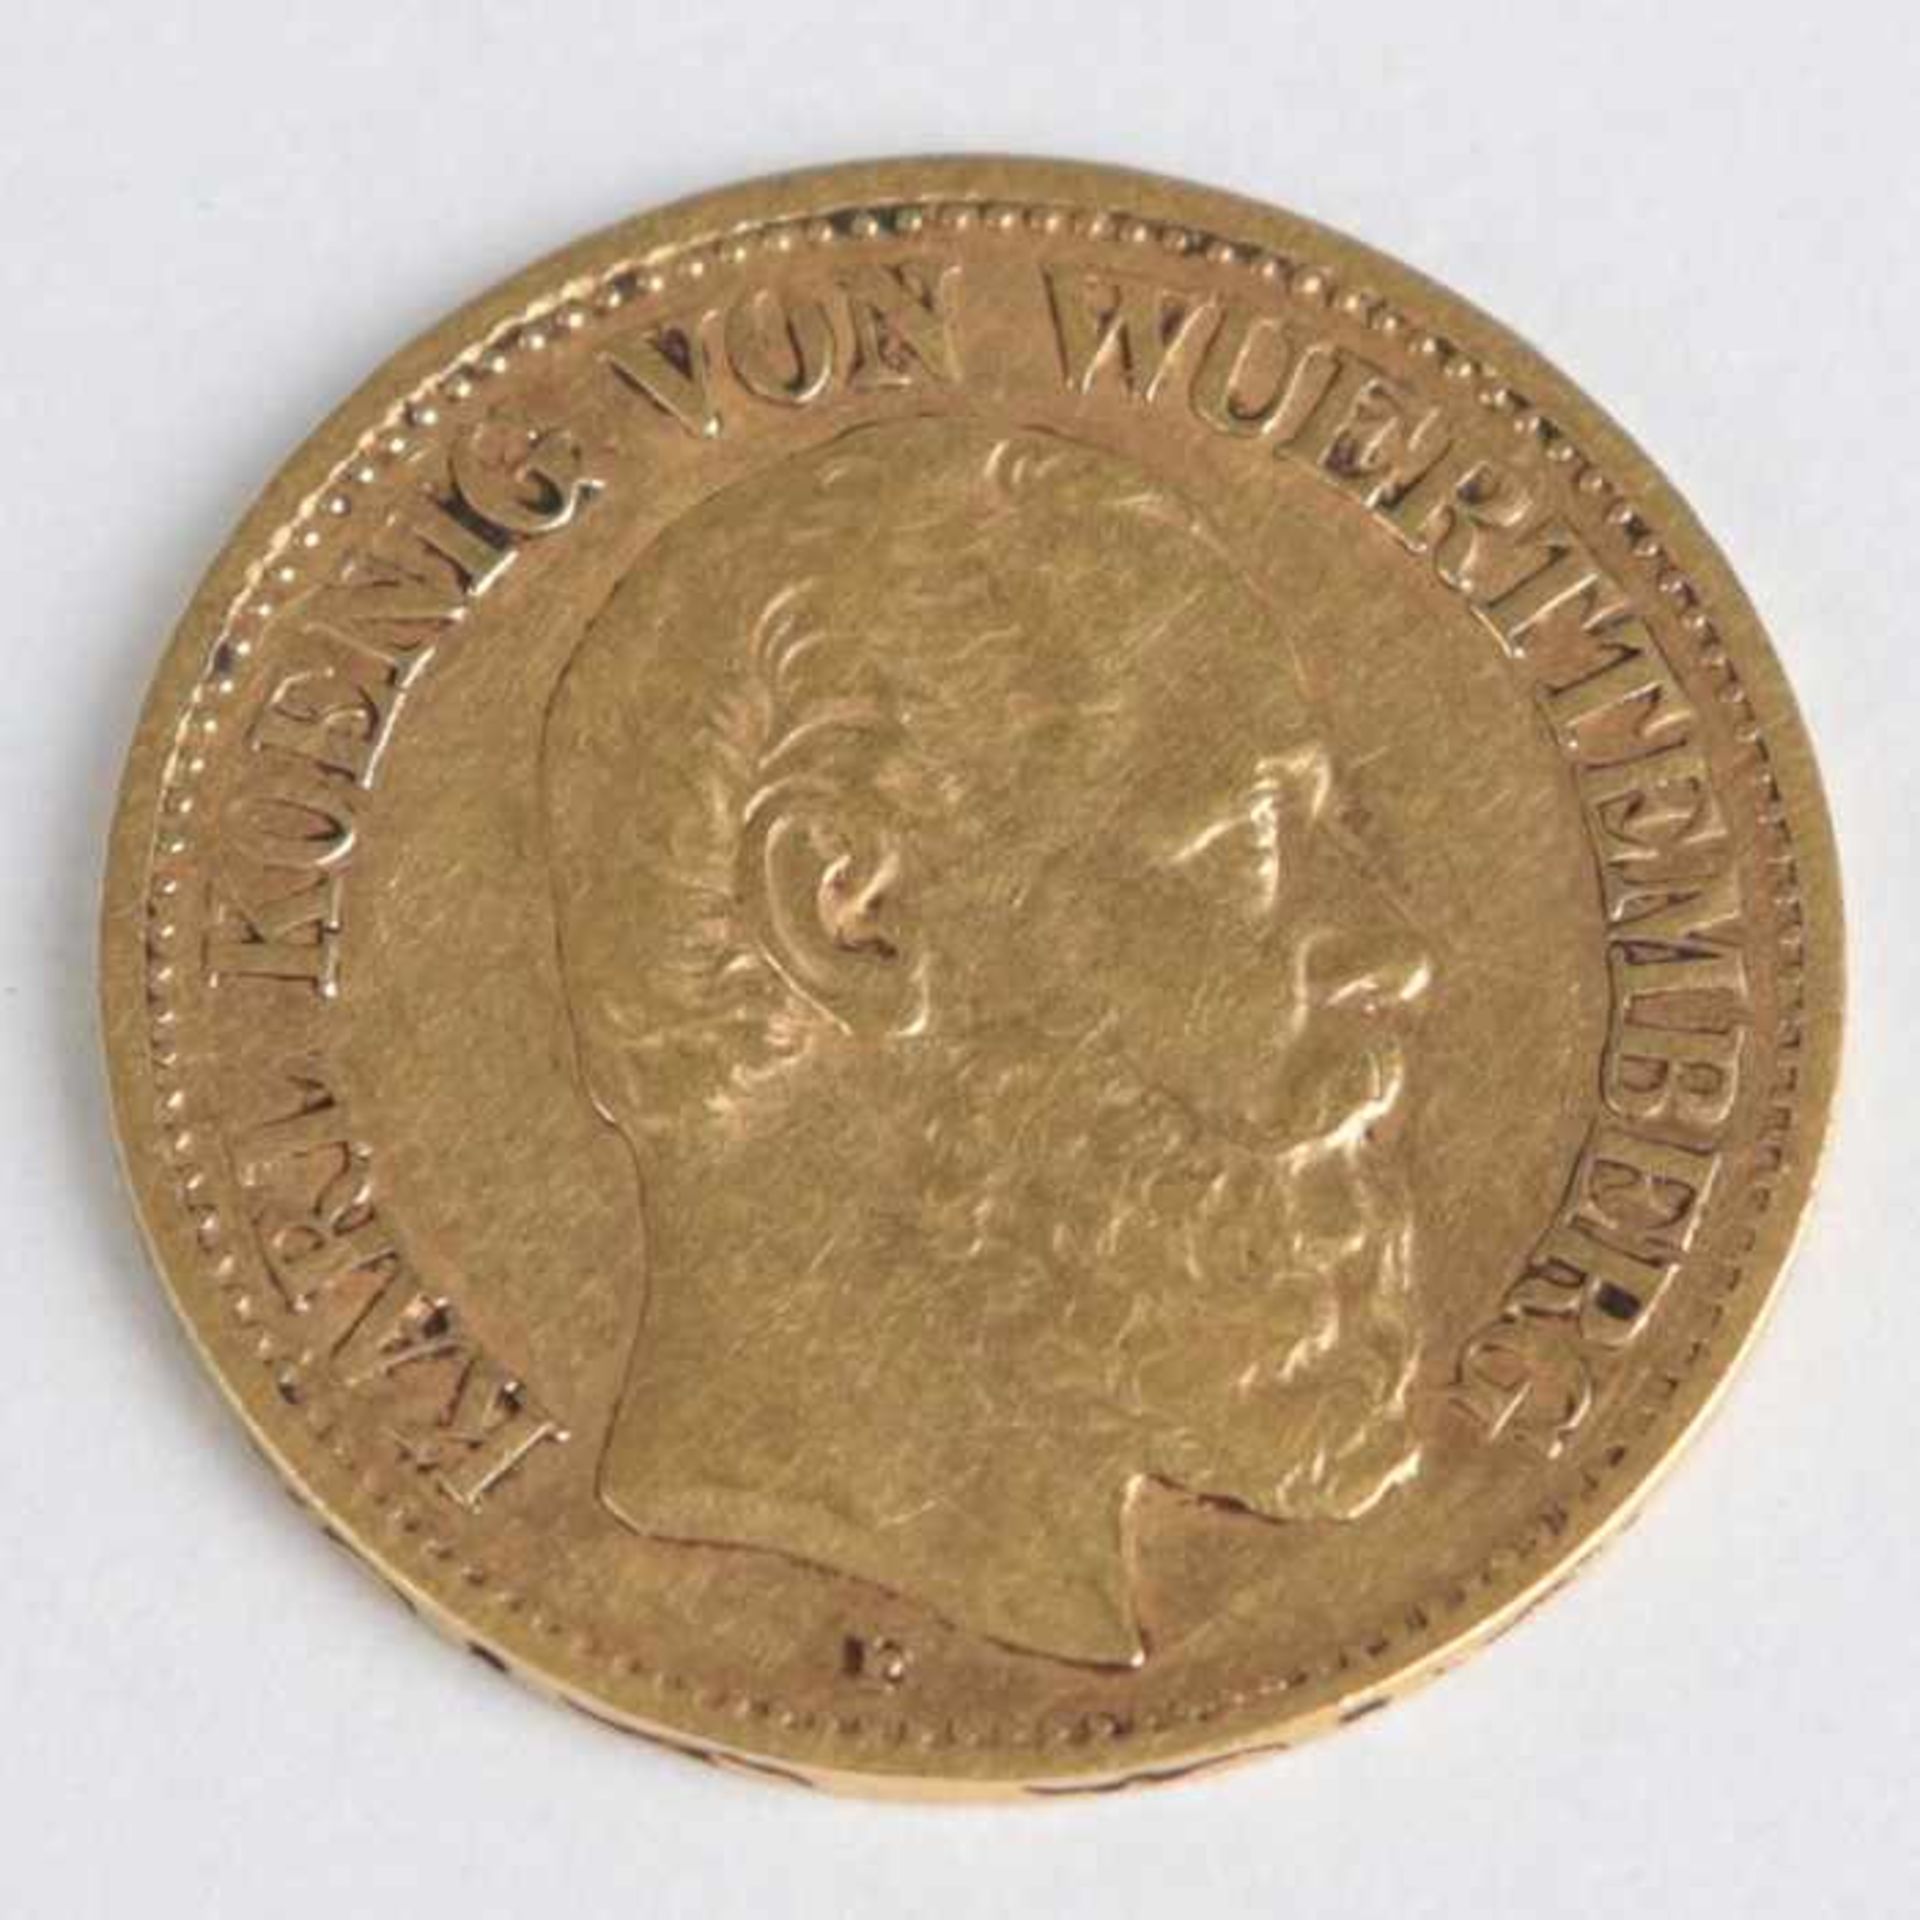 Goldmünze Württemberg - 10 MarkKarl Koenig von Wuerttemberg, Deutsches Reich, 1888/F, G 3,94g- - -